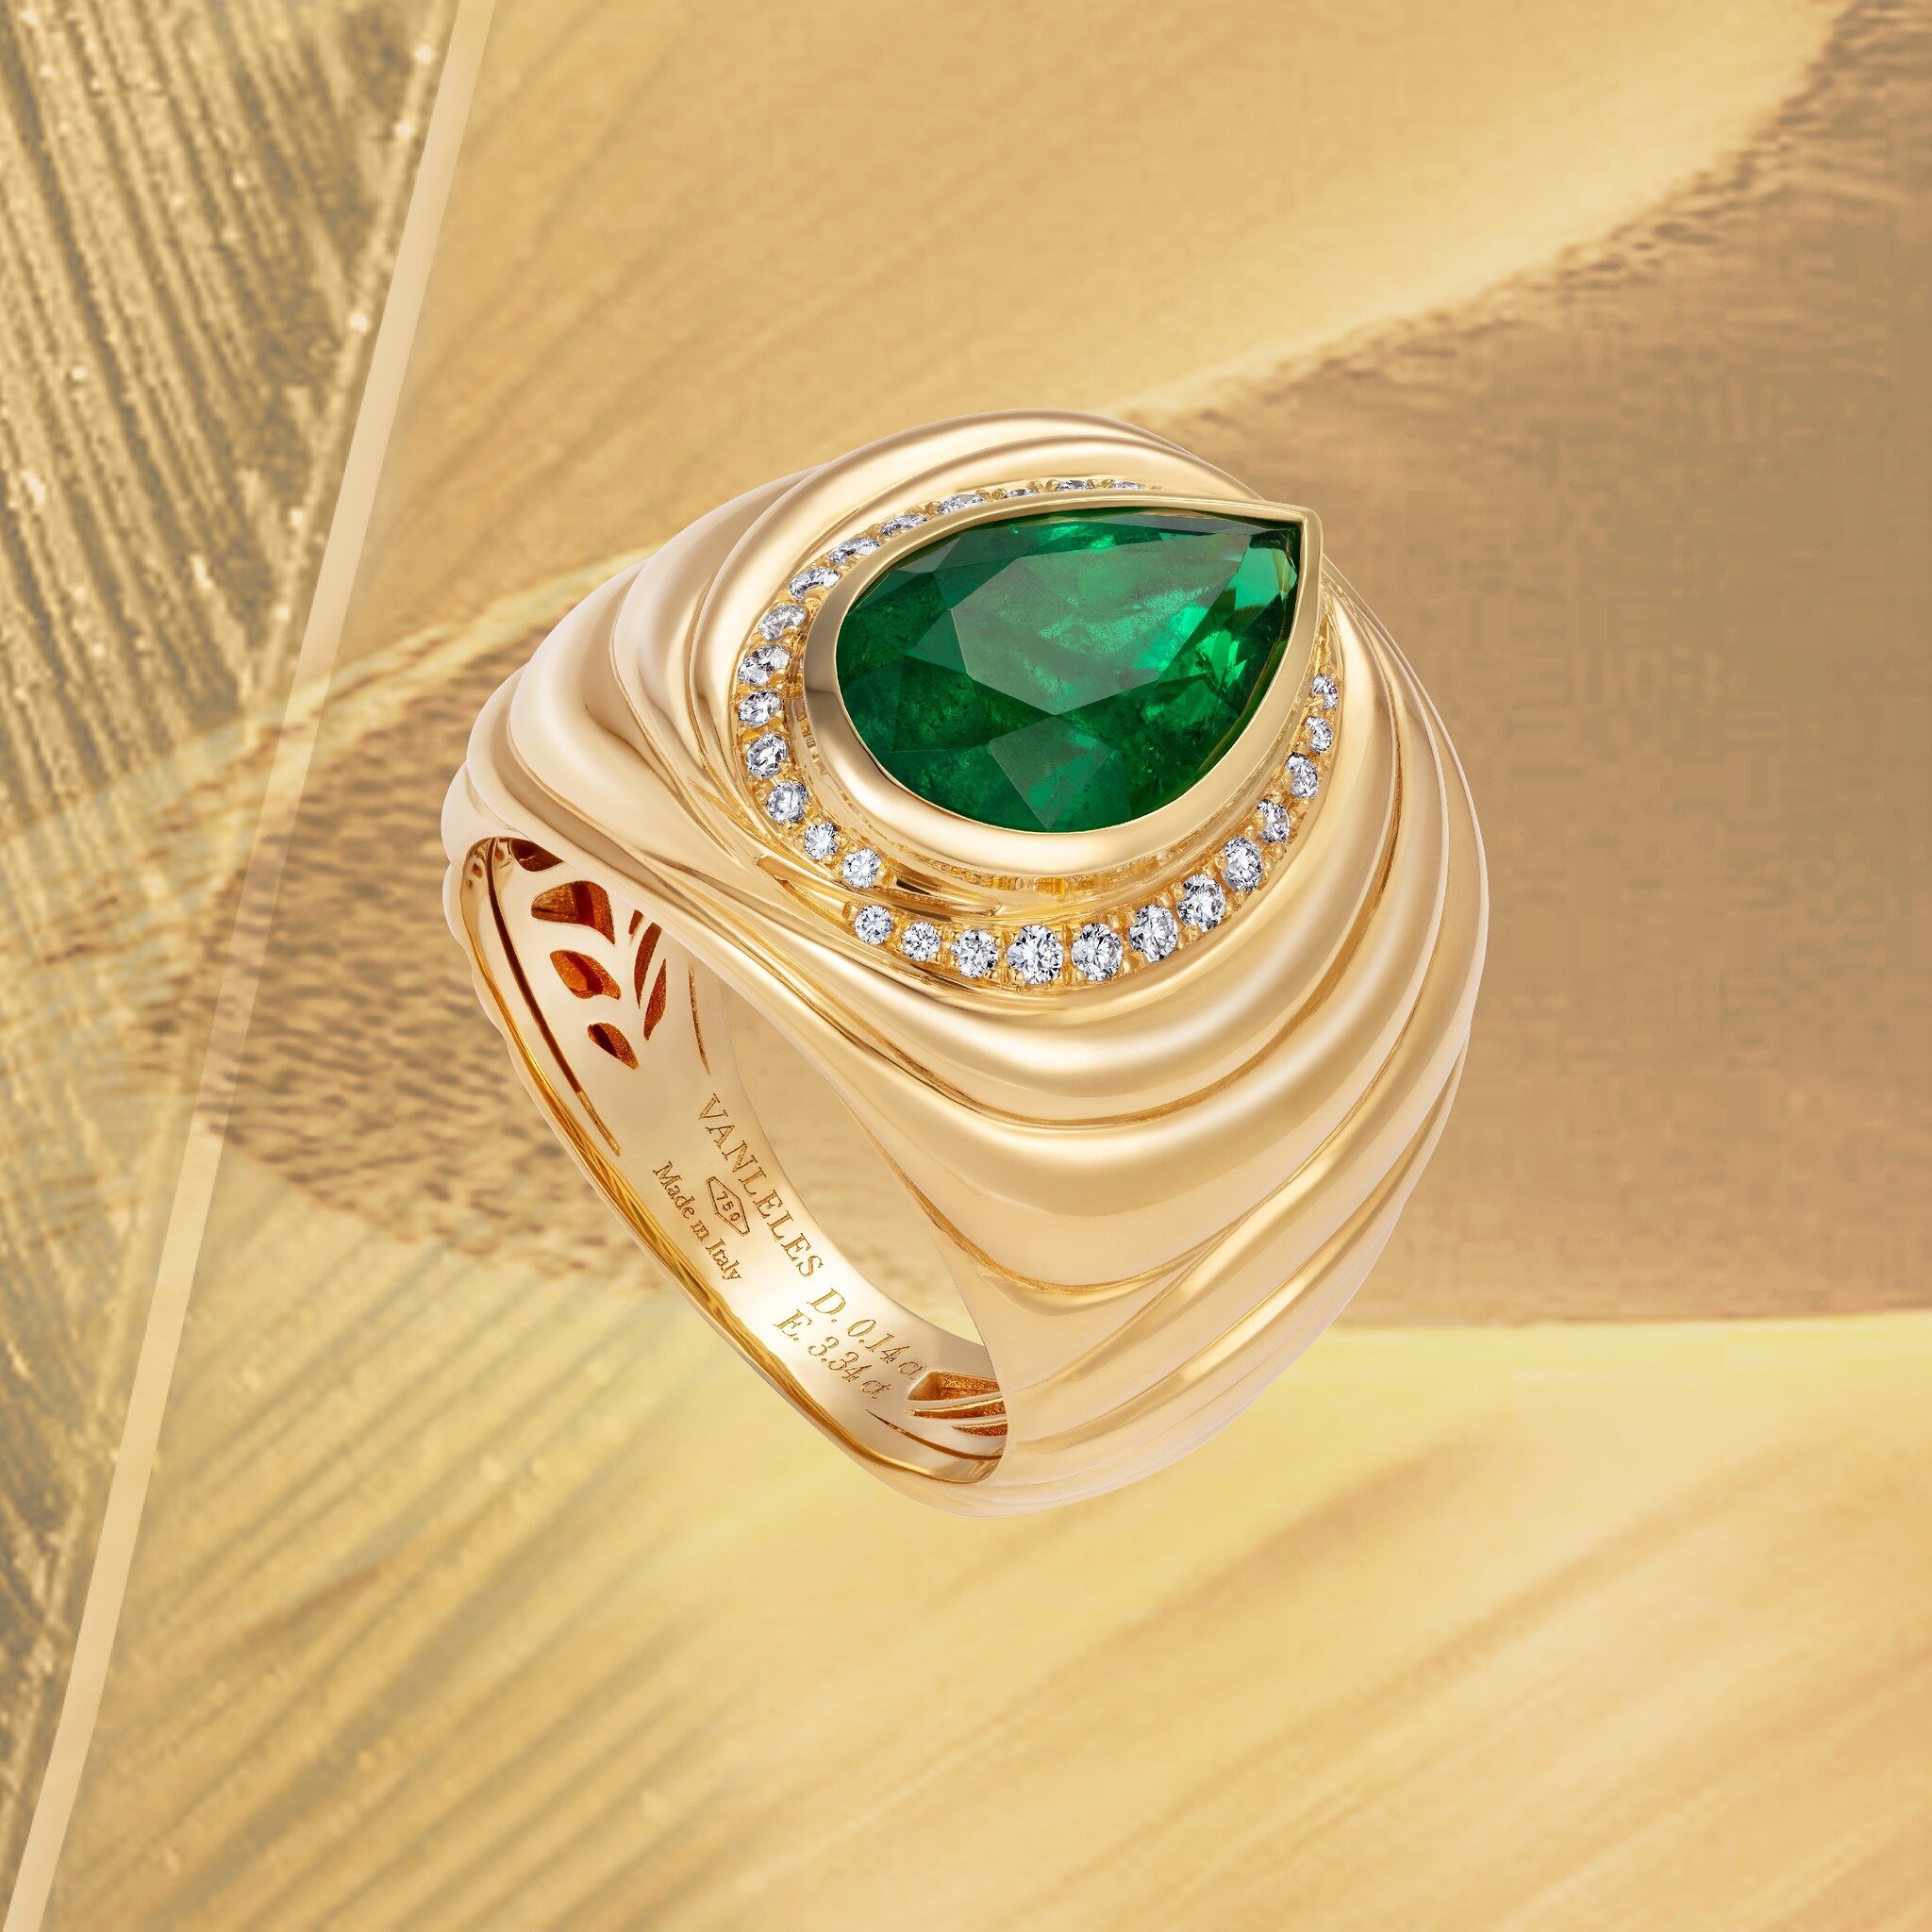 Blazing Trails emerald ring 💚🤎💚